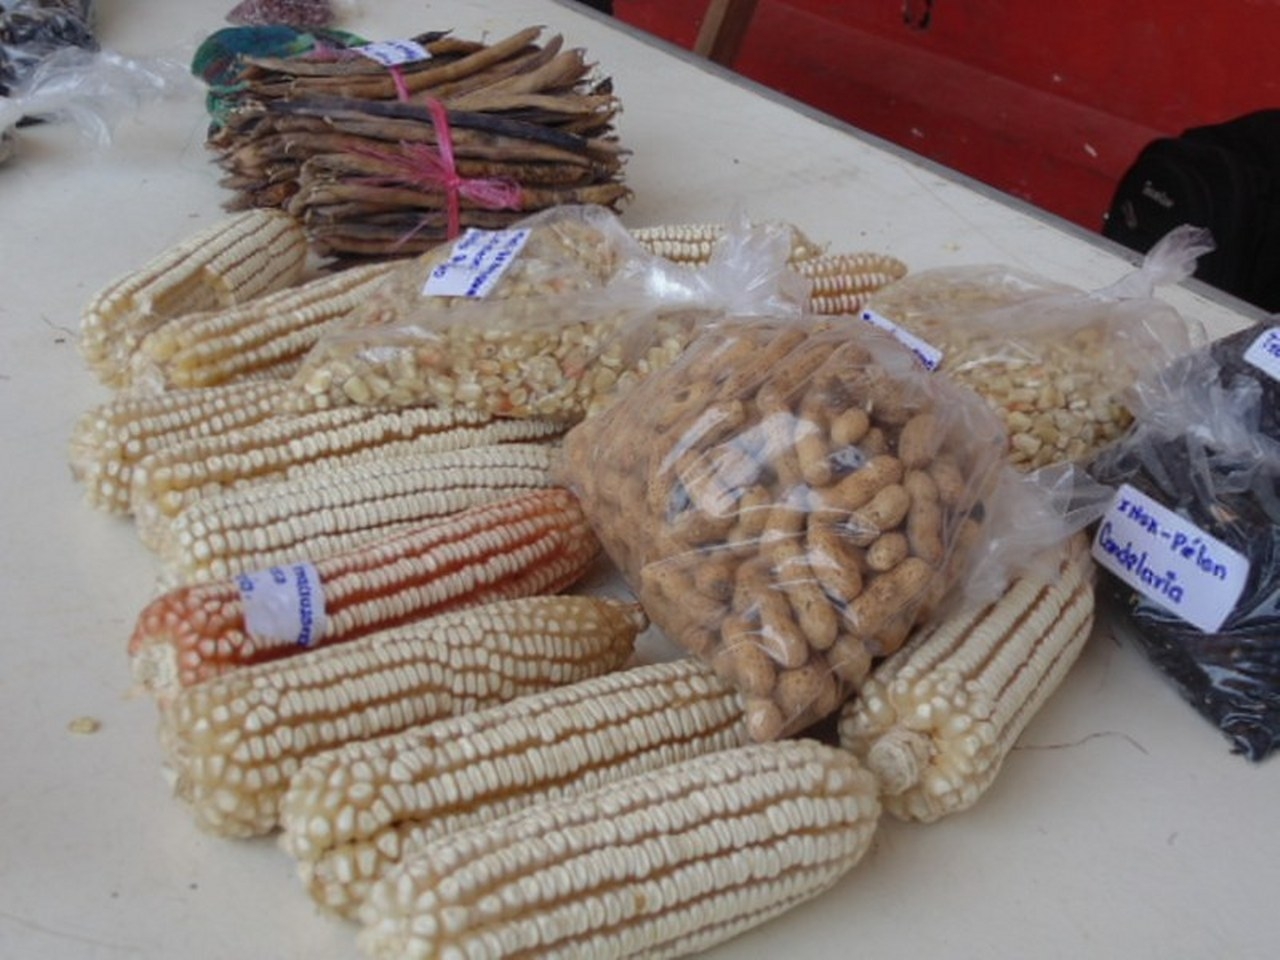 Milperos de Quintana Roo señalan la escasez de maíz criollo en la entidad